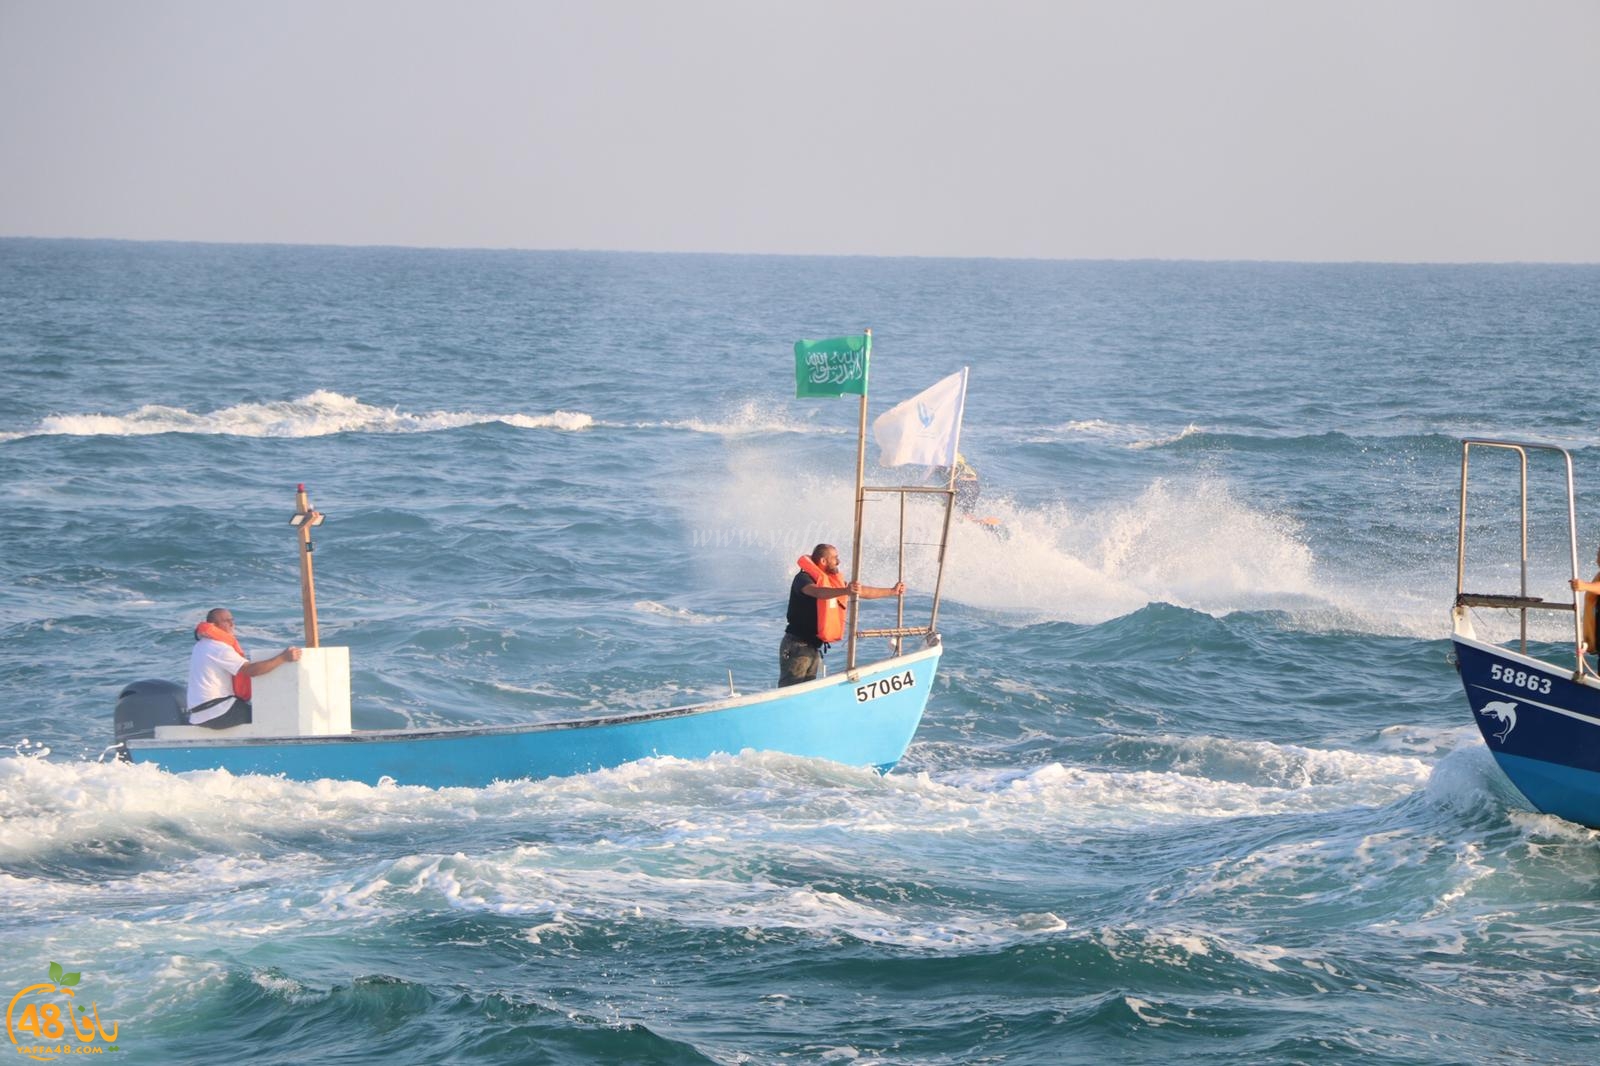  بالصور: صيادو يافا يُنظمون استعراضاً بحرياً بعد صلاة العيد في العراء